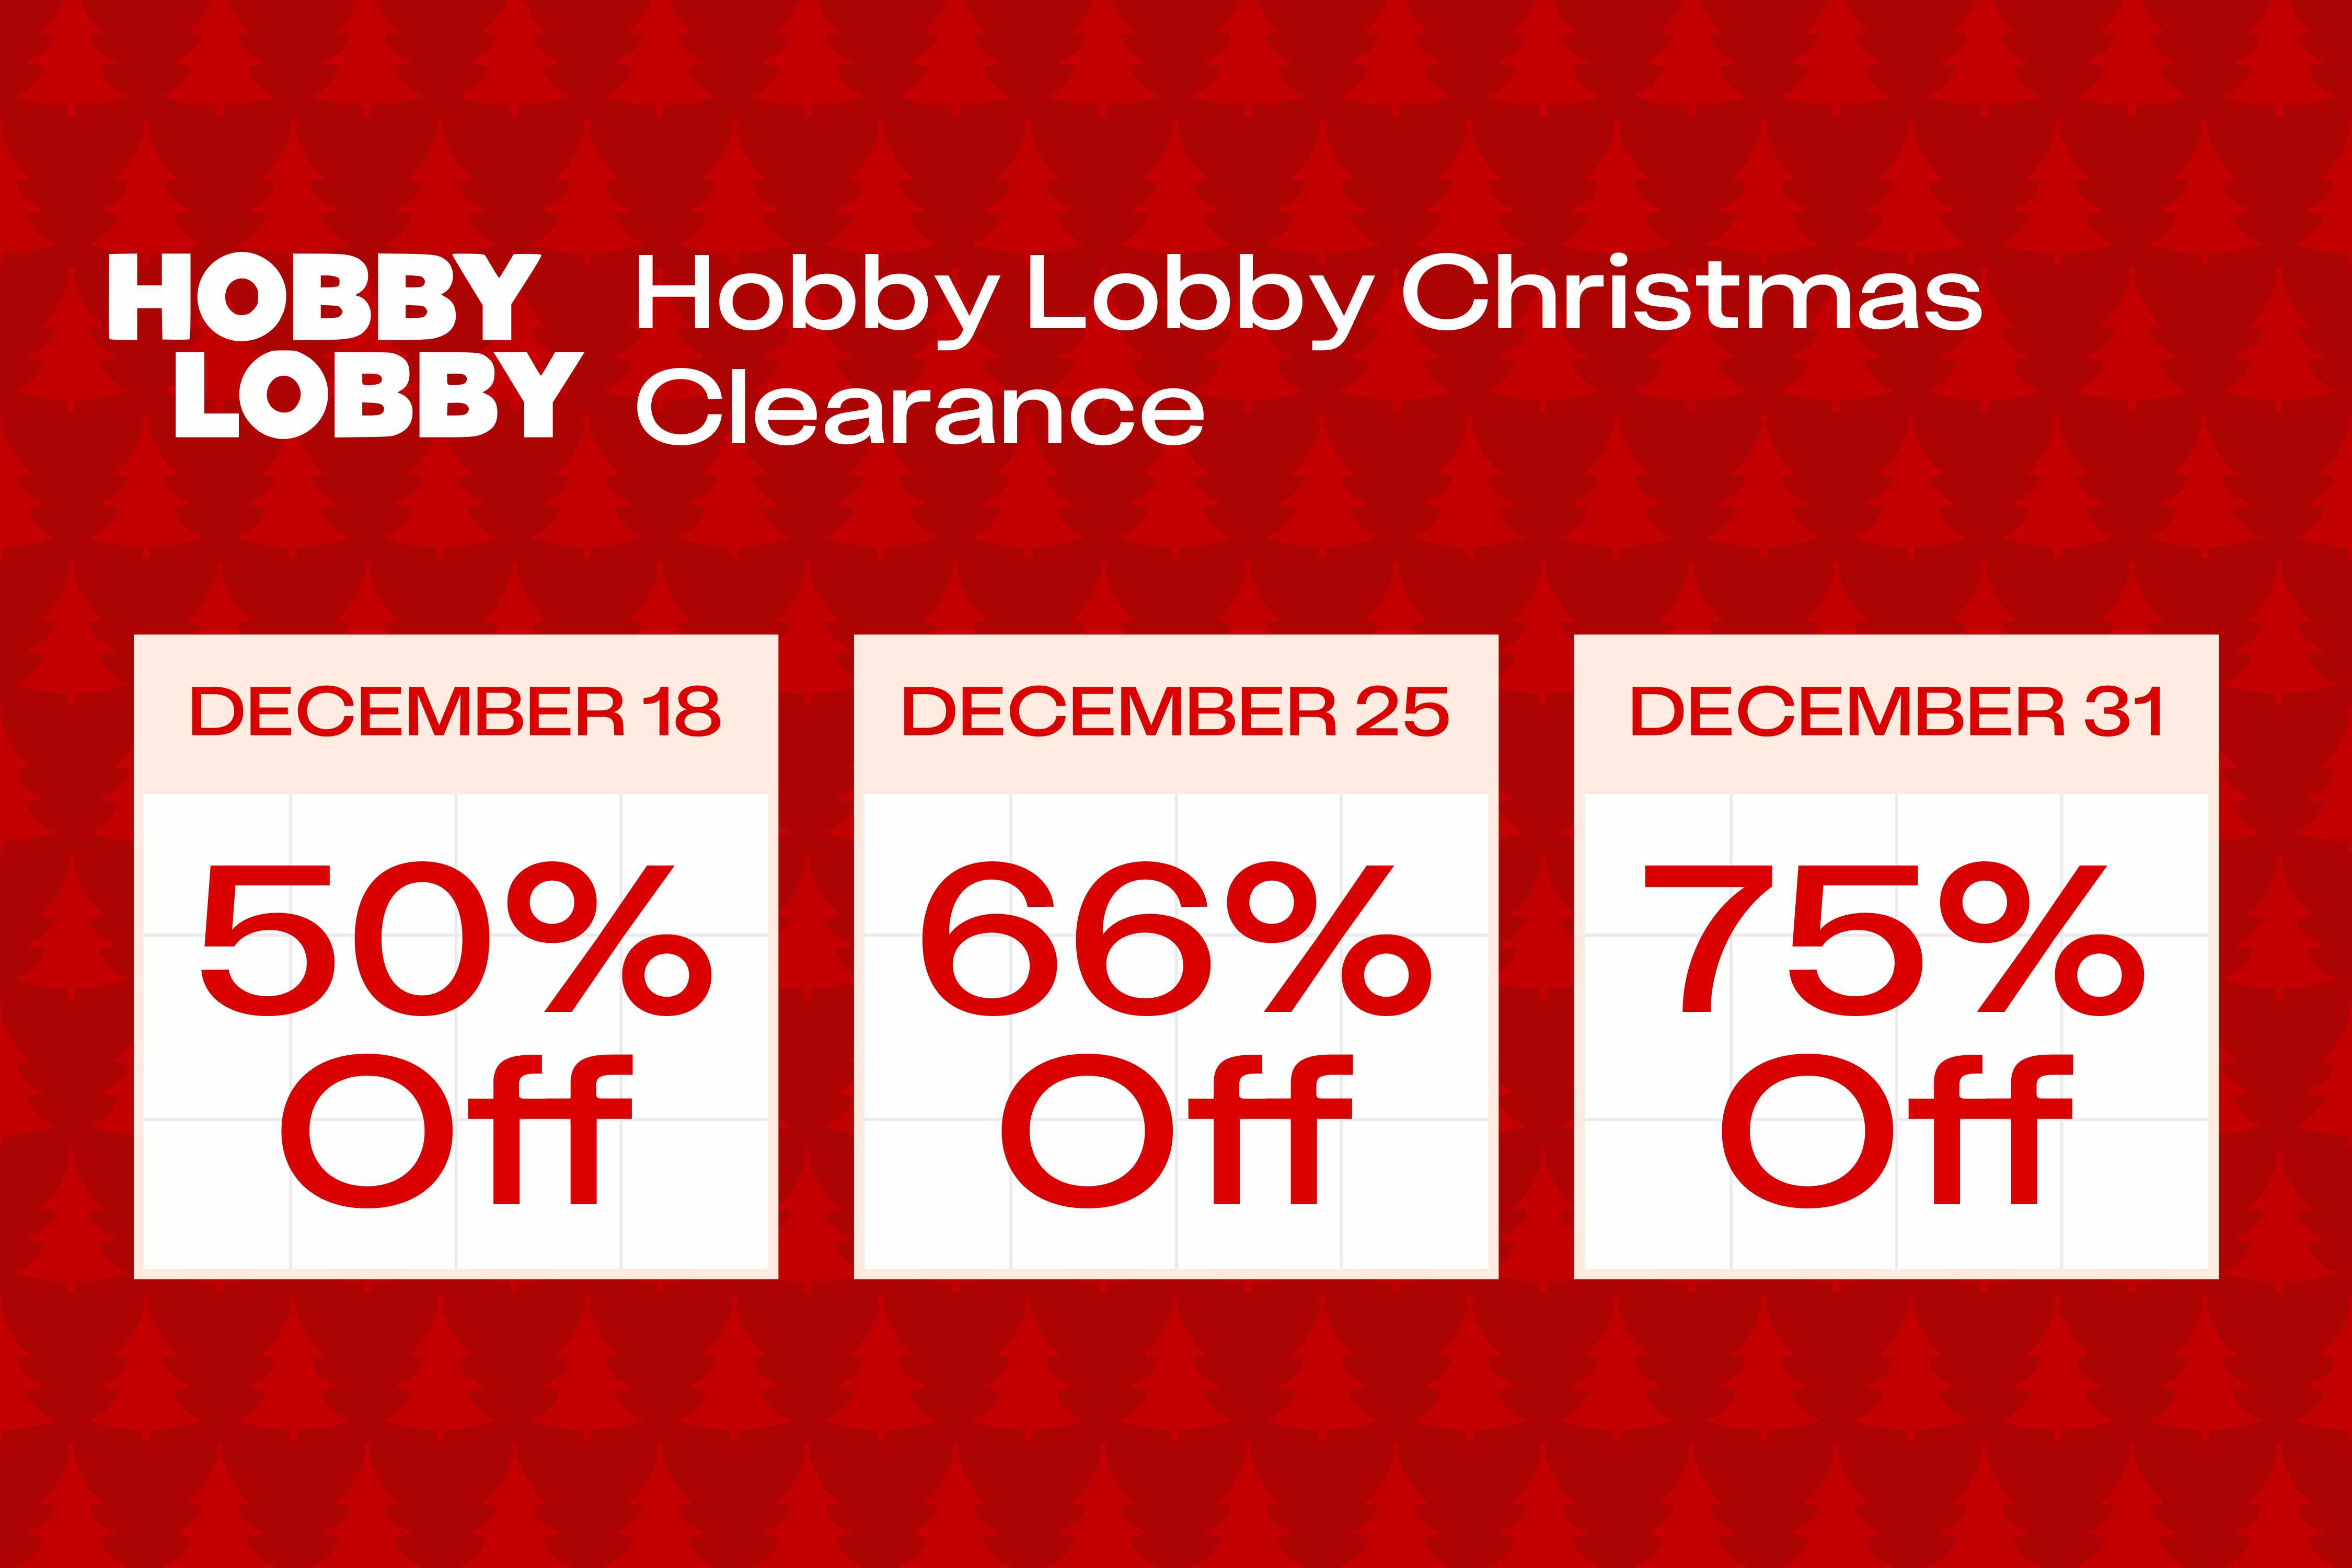 90% Off Hobby Lobby Christmas Clearance